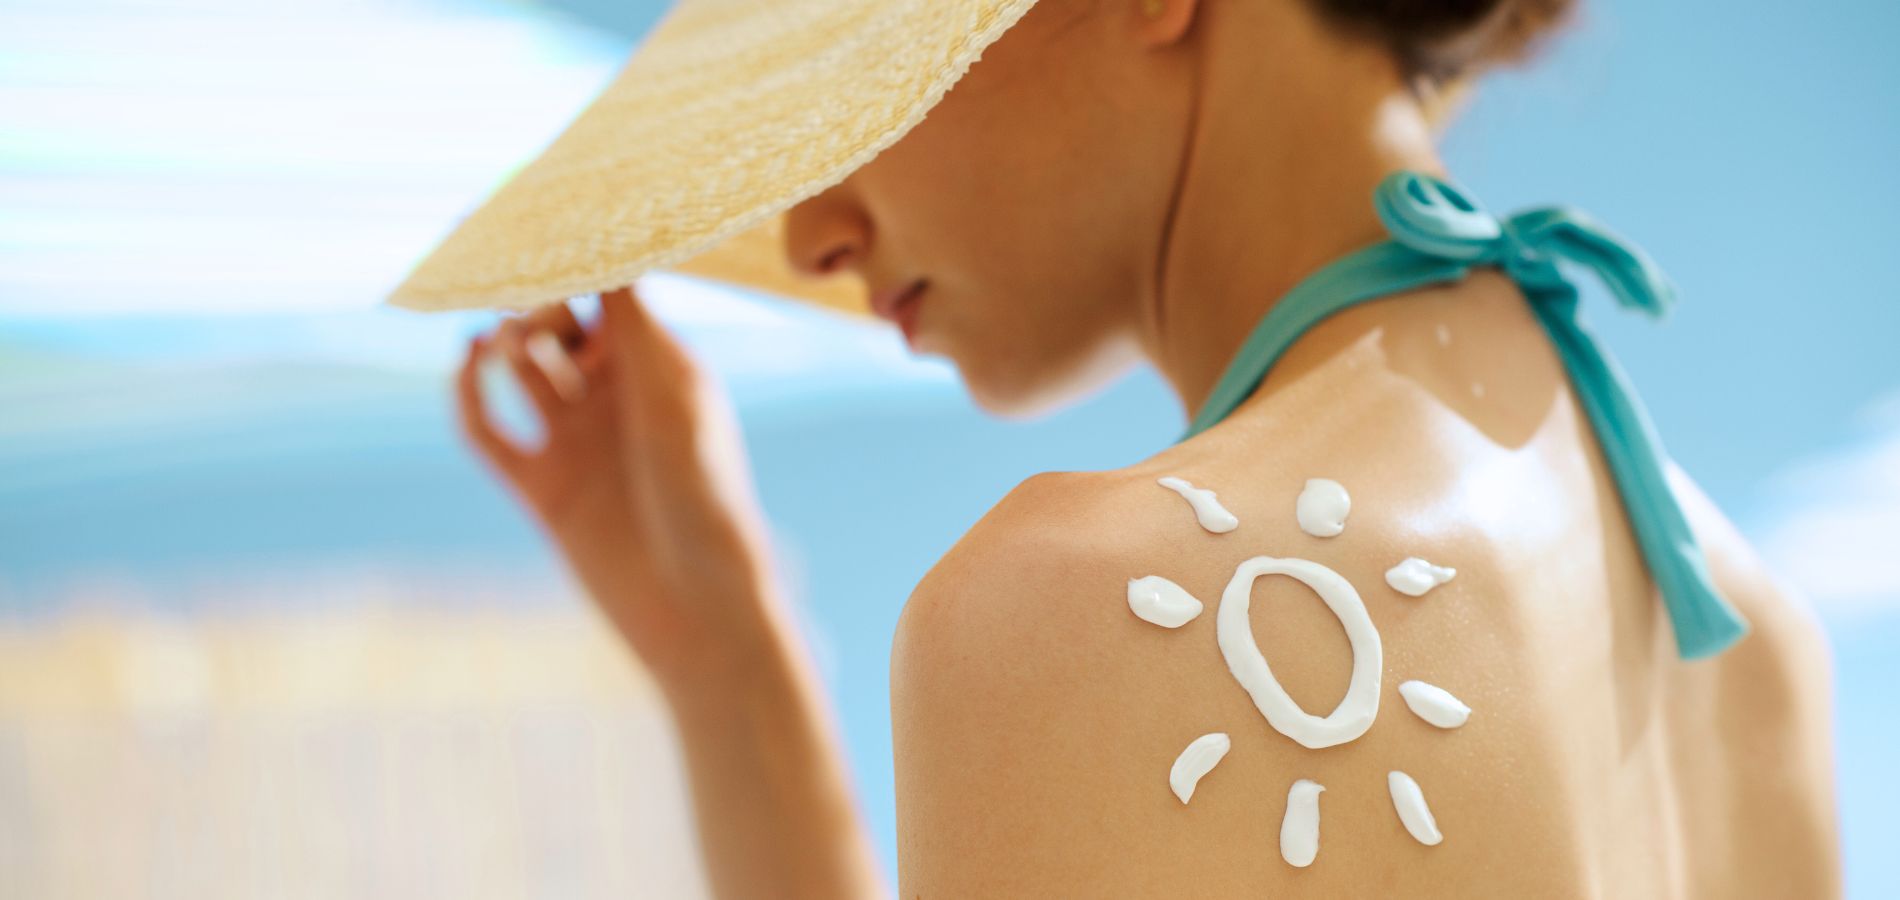 Le principali tendenze che guidano i prodotti per la cura del sole - immagine in evidenza